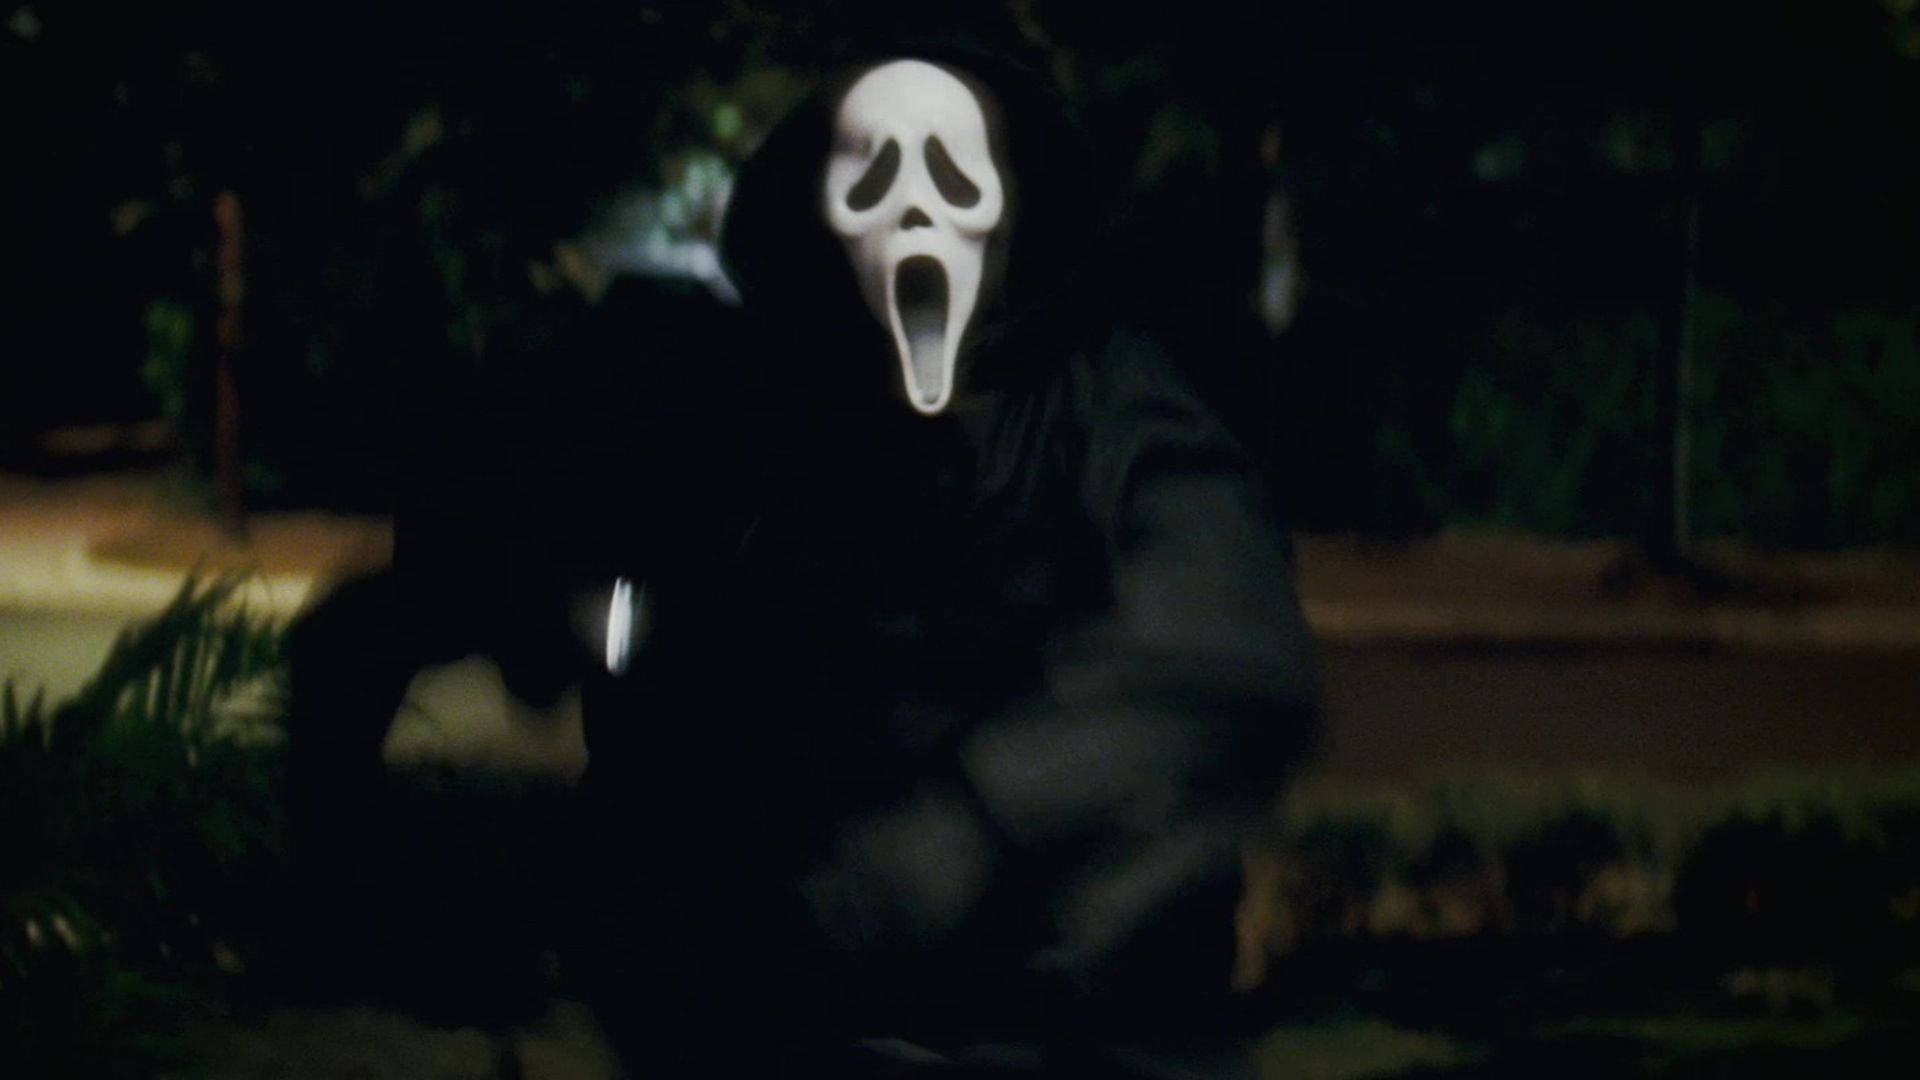 Ghostface Running Scream 4 Wallpaper